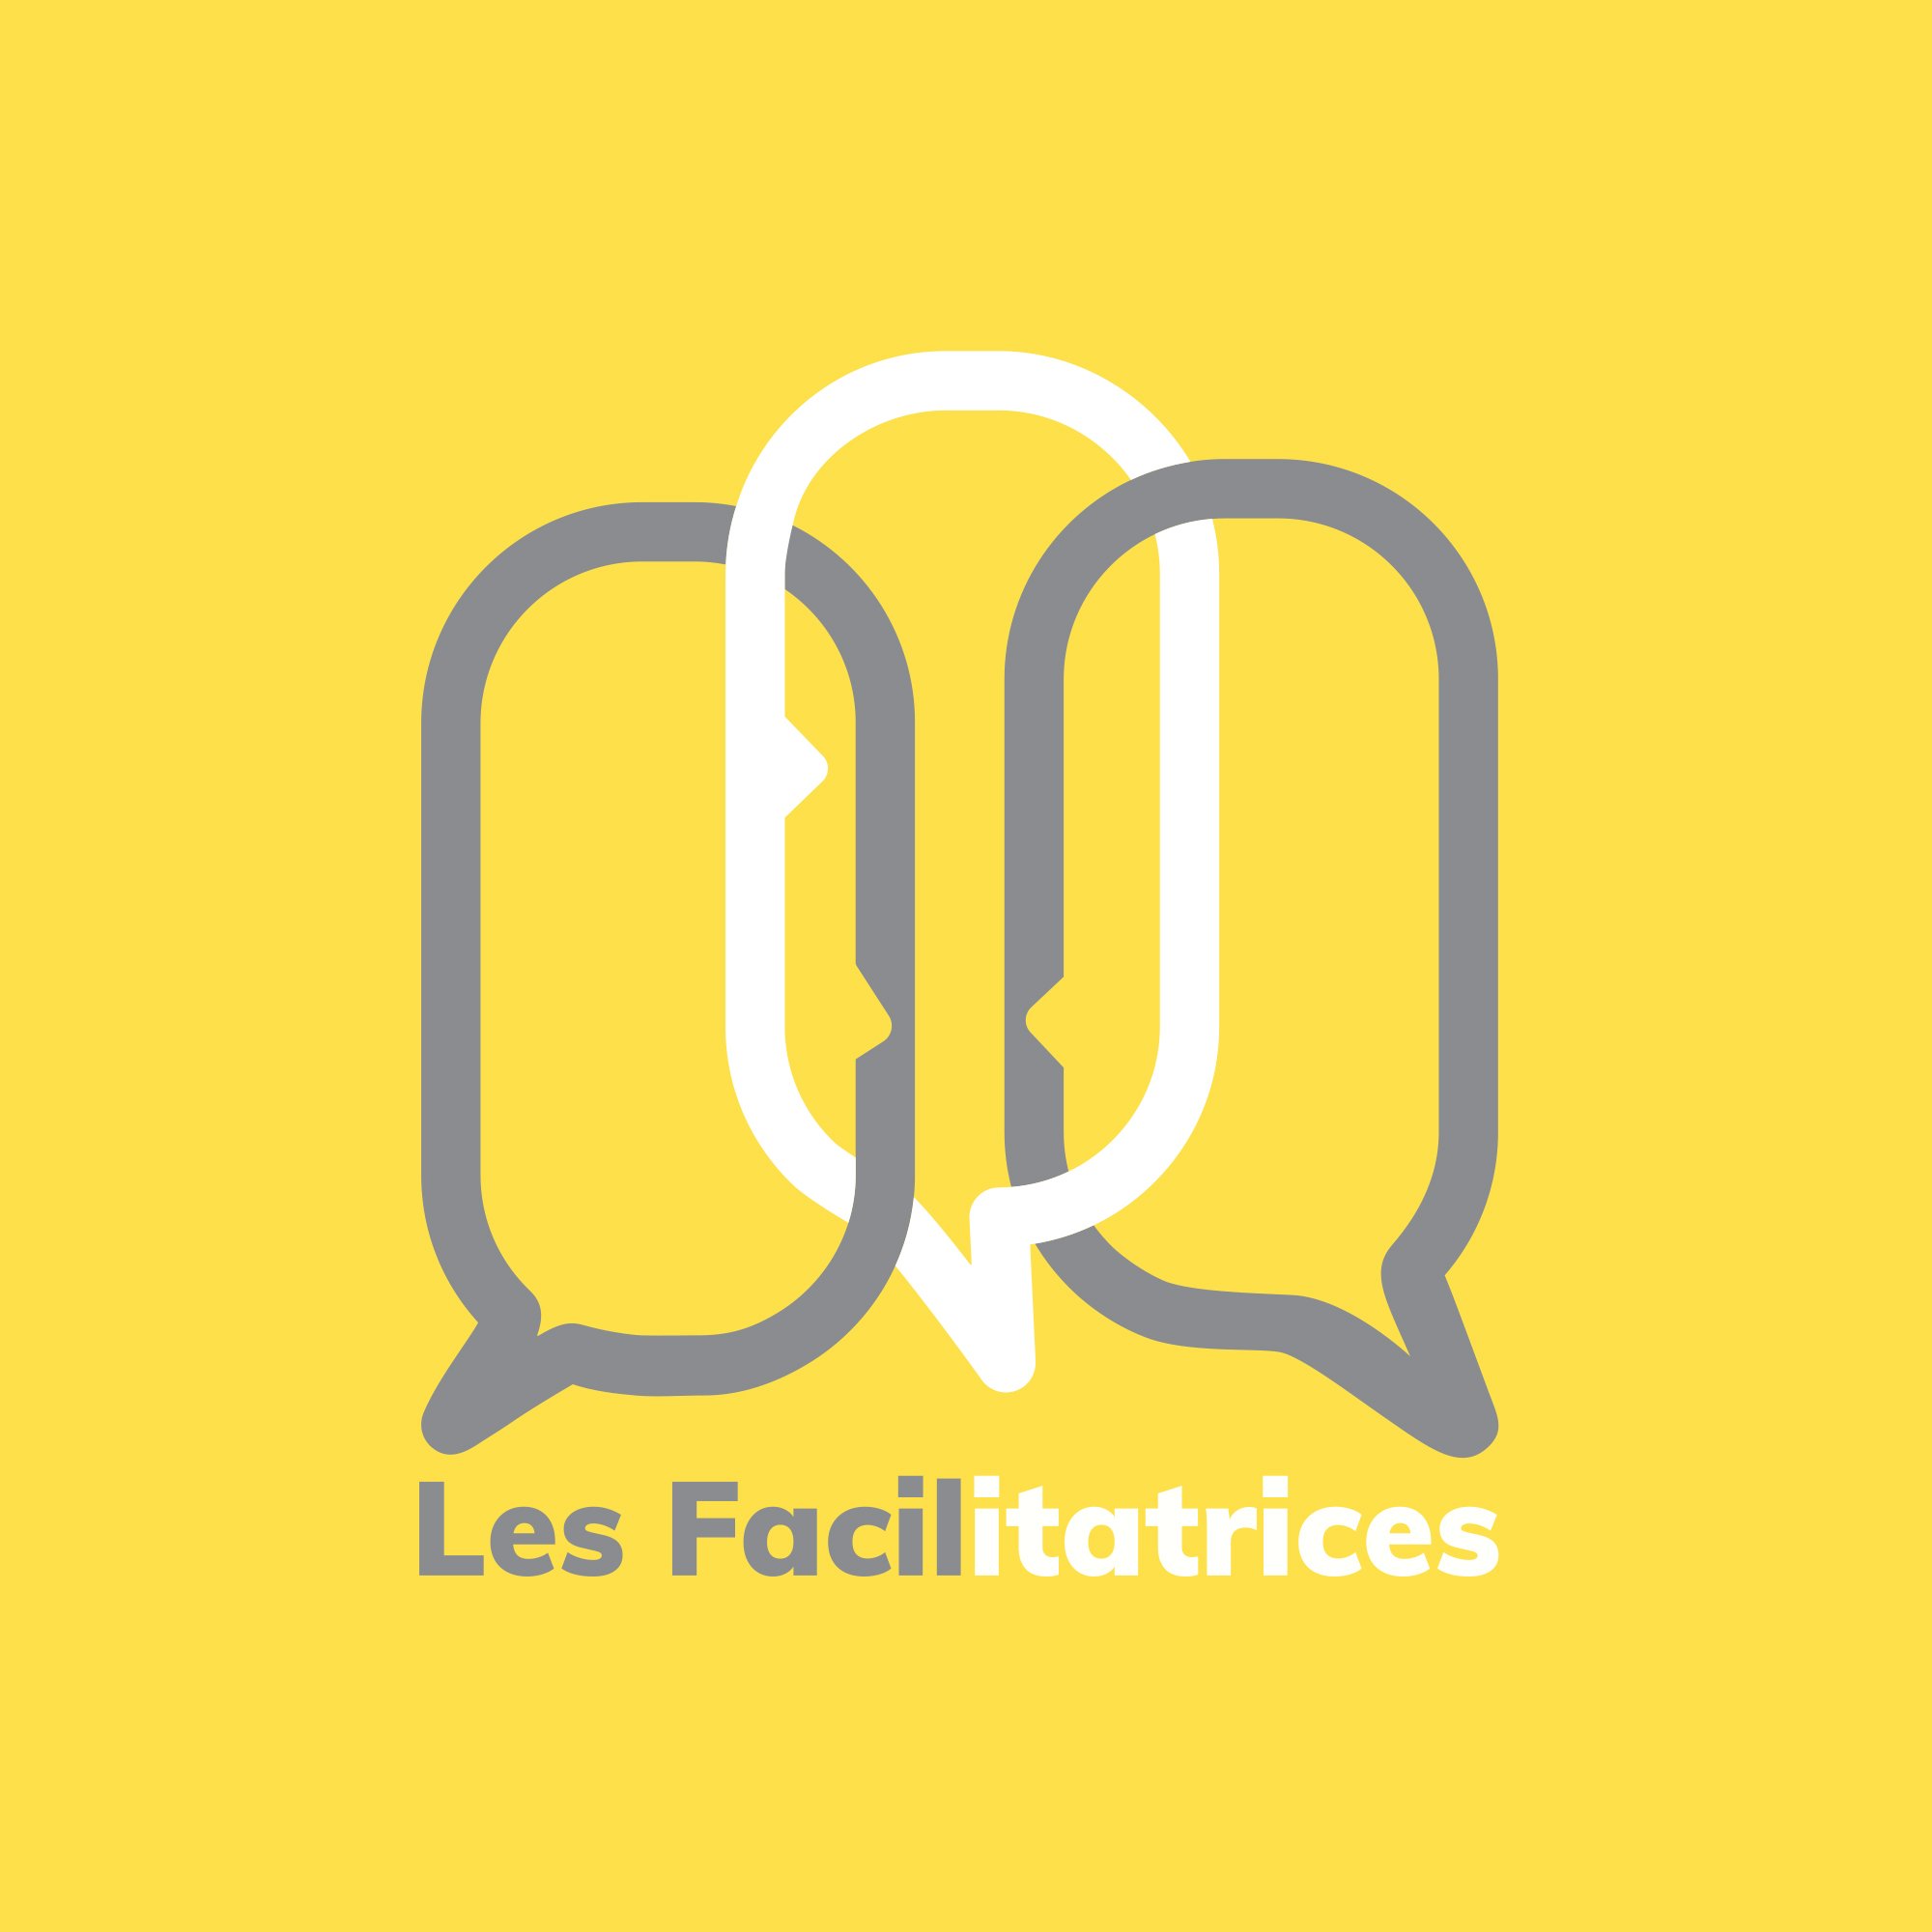 Les Facilitatrices logo sur fond jaune